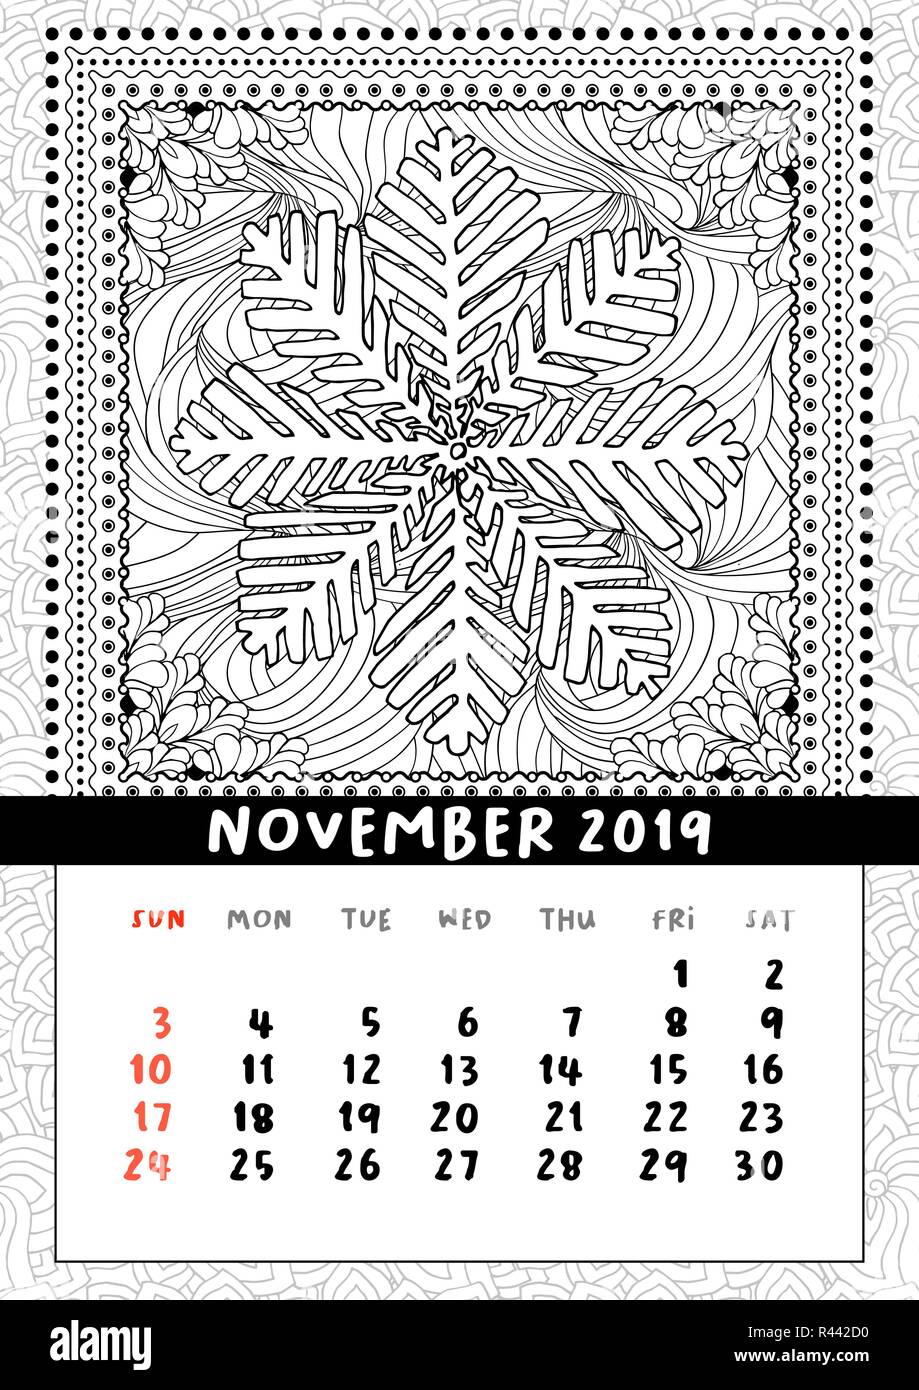 Schneeflocke Malbuch Seite, Kalender November 2019. Handdraw doodle Abbildung in quadratischen Rahmen. Schwarze und weiße Linie Art Poster. Vektor, Muster Stock Vektor